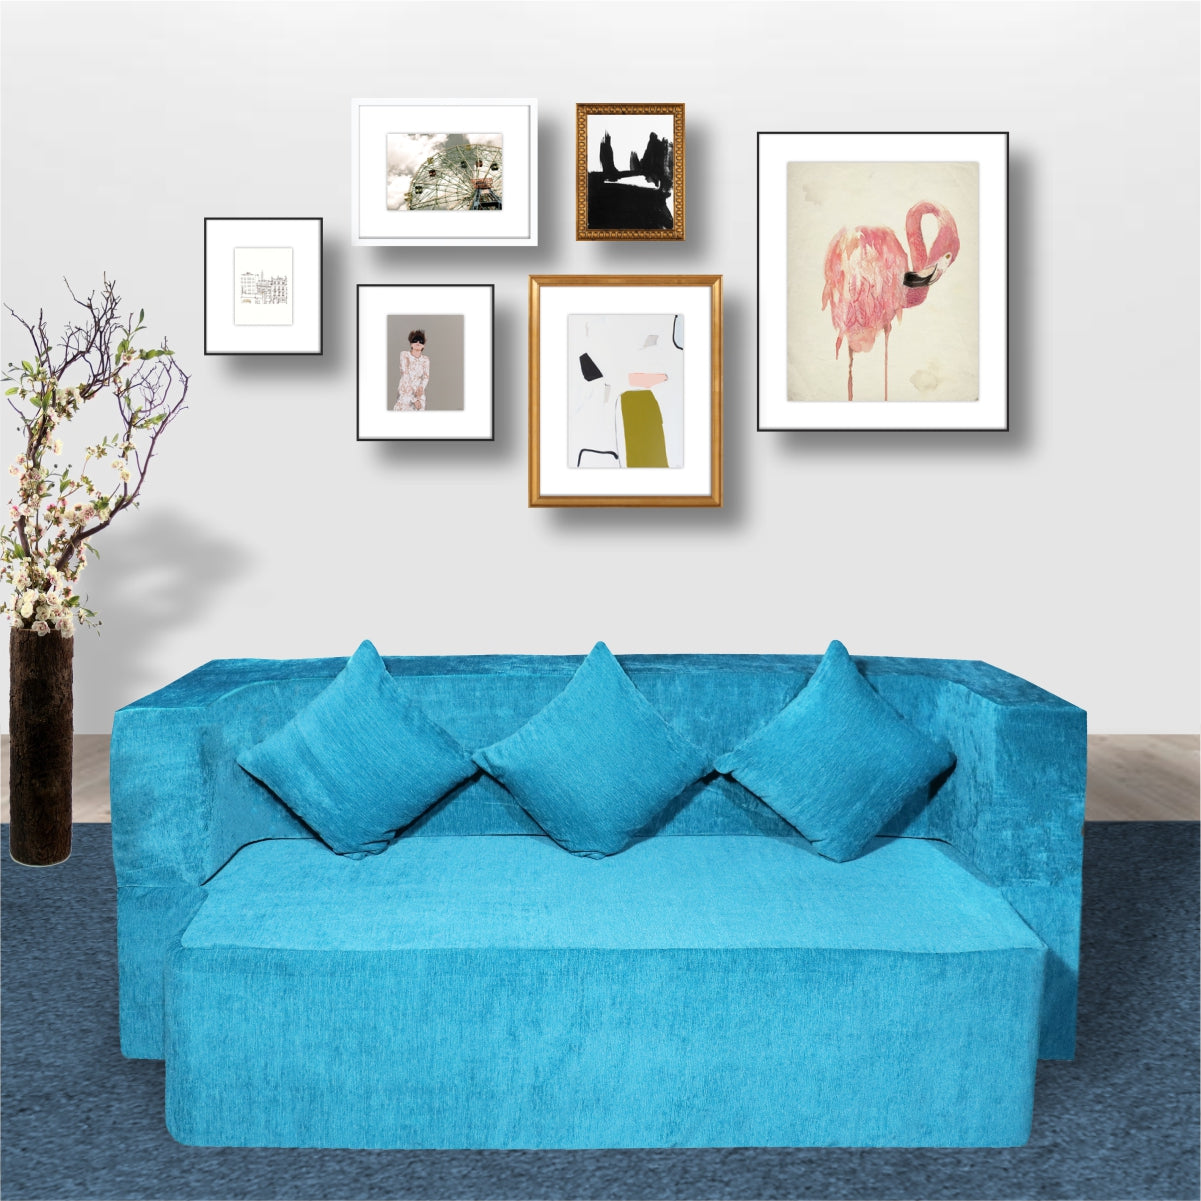 Cover of Sky Blue Chenille Molfino Fabric (72"x44"x14") FlipperX Sofa Bed